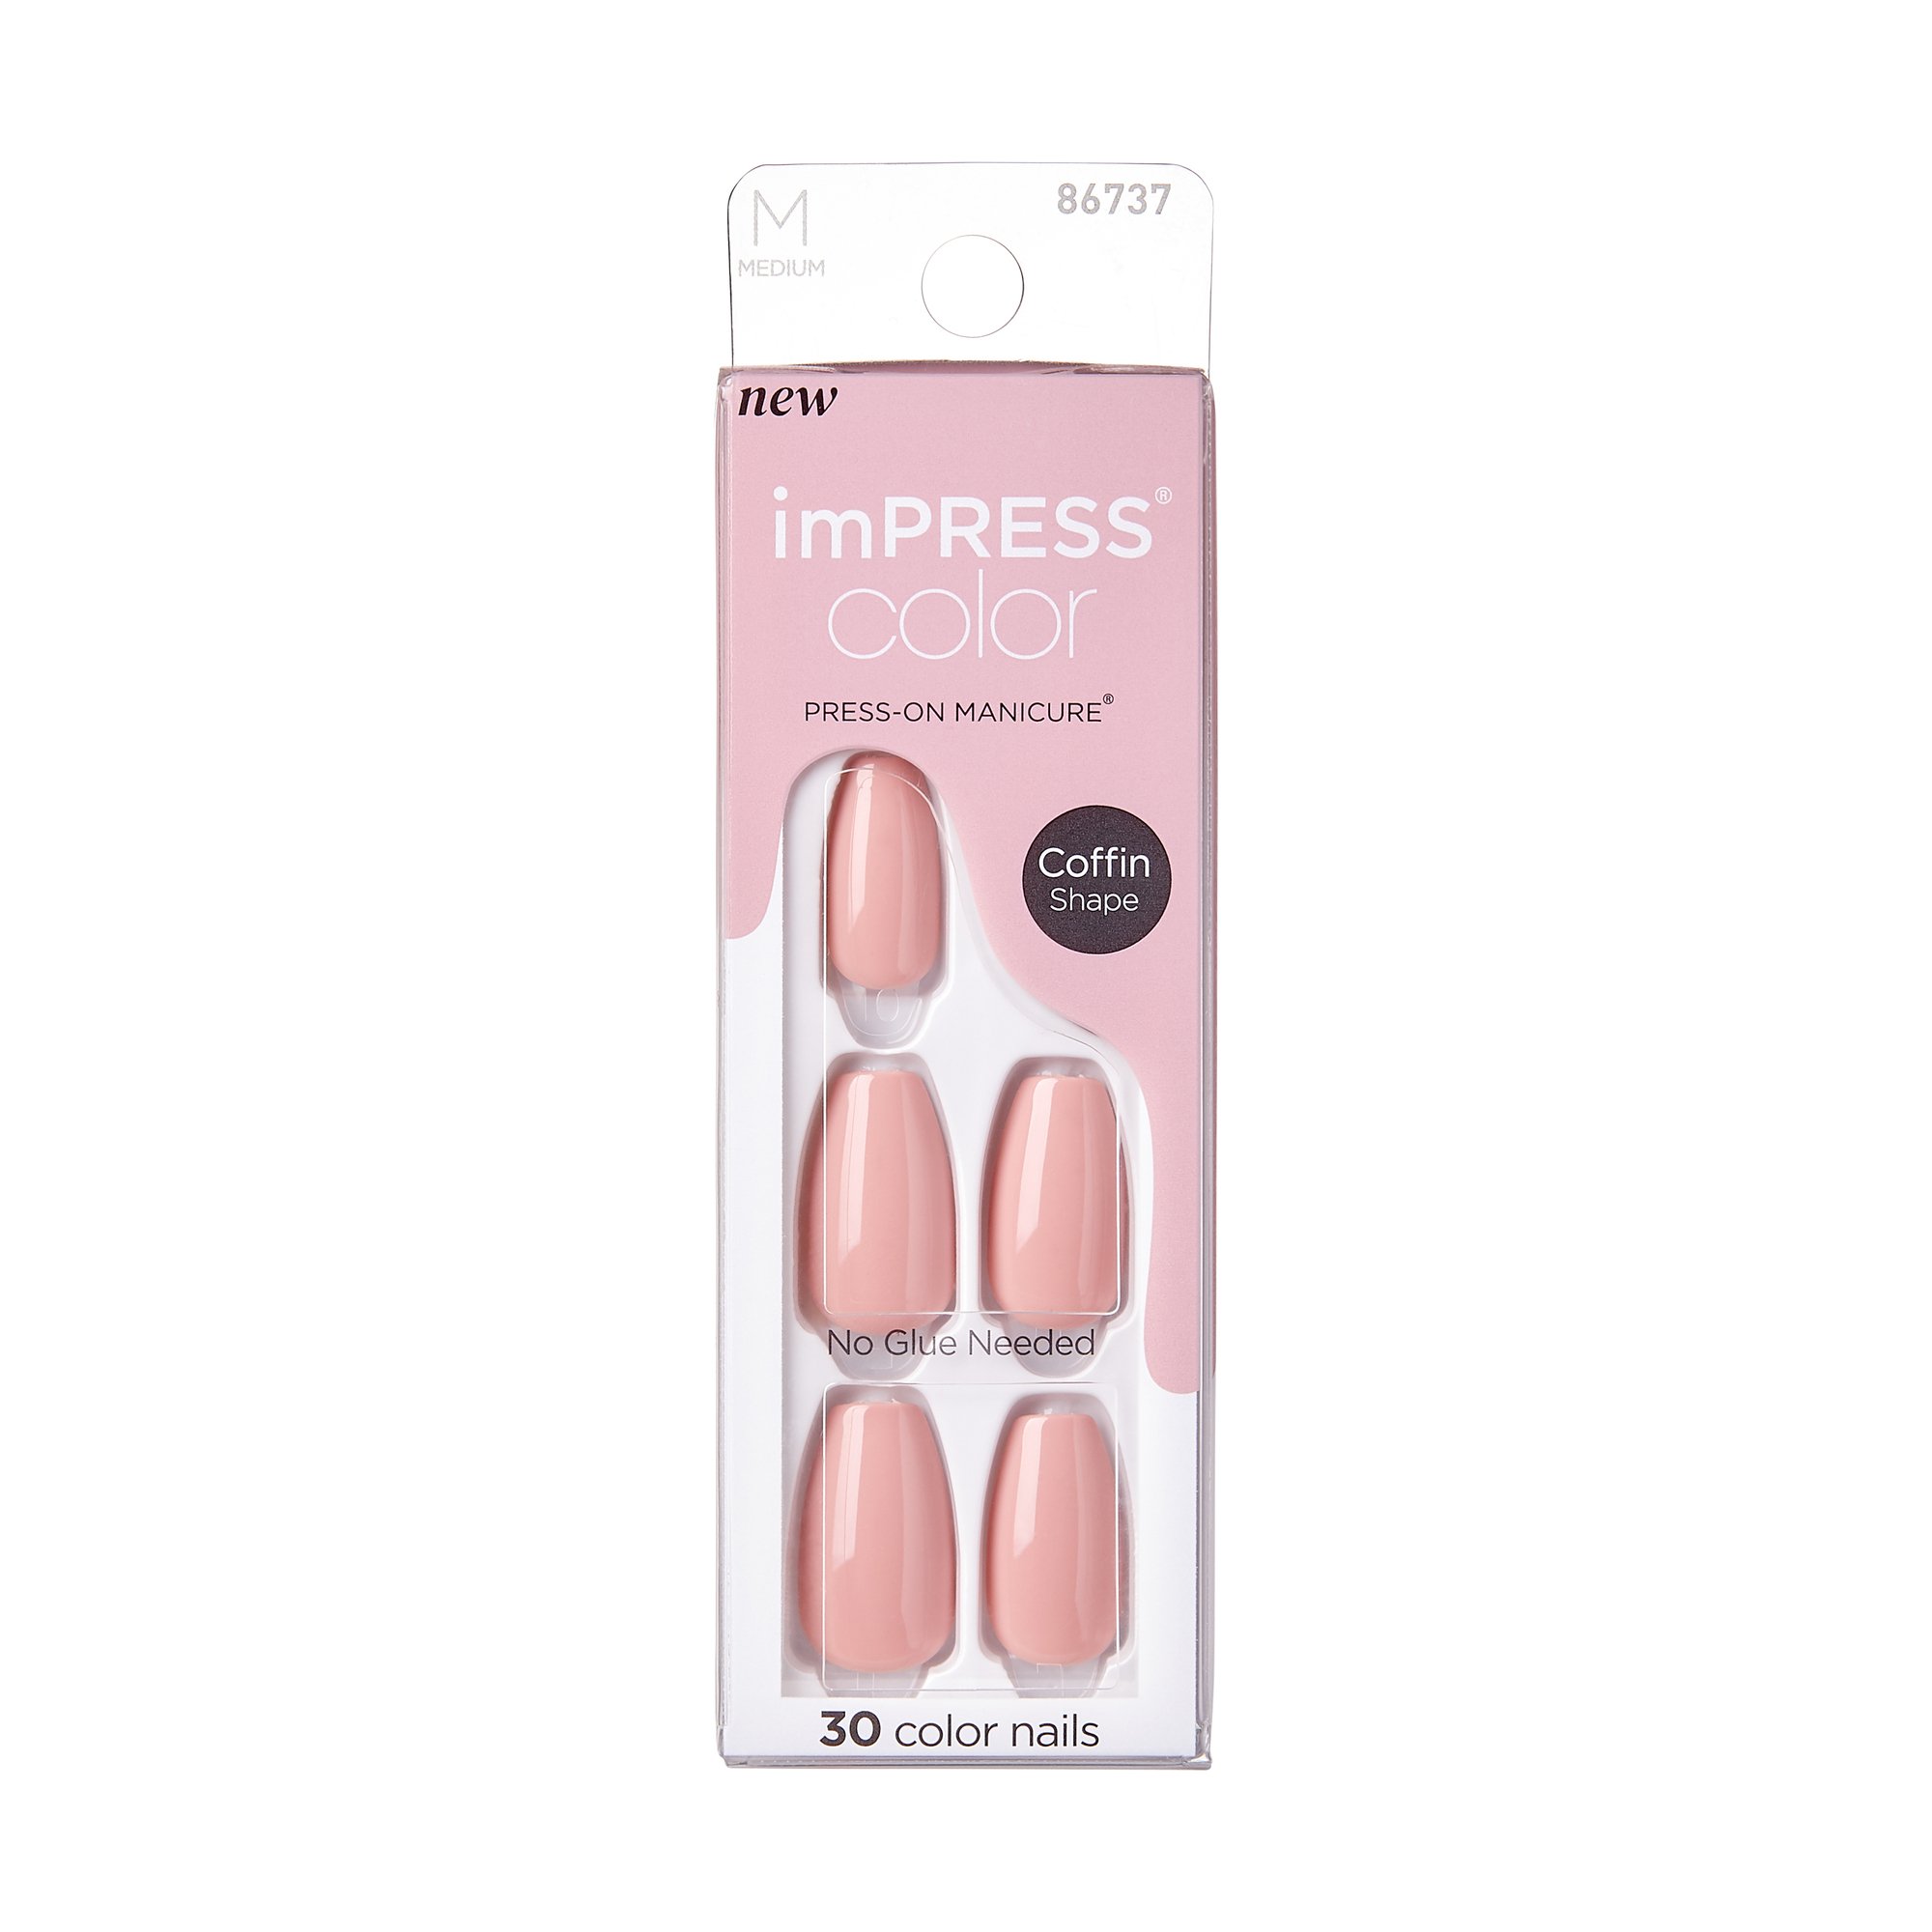 KISS imPRESS Color Press-On Manicure - Sumptuous - Shop Nail Sets at H-E-B